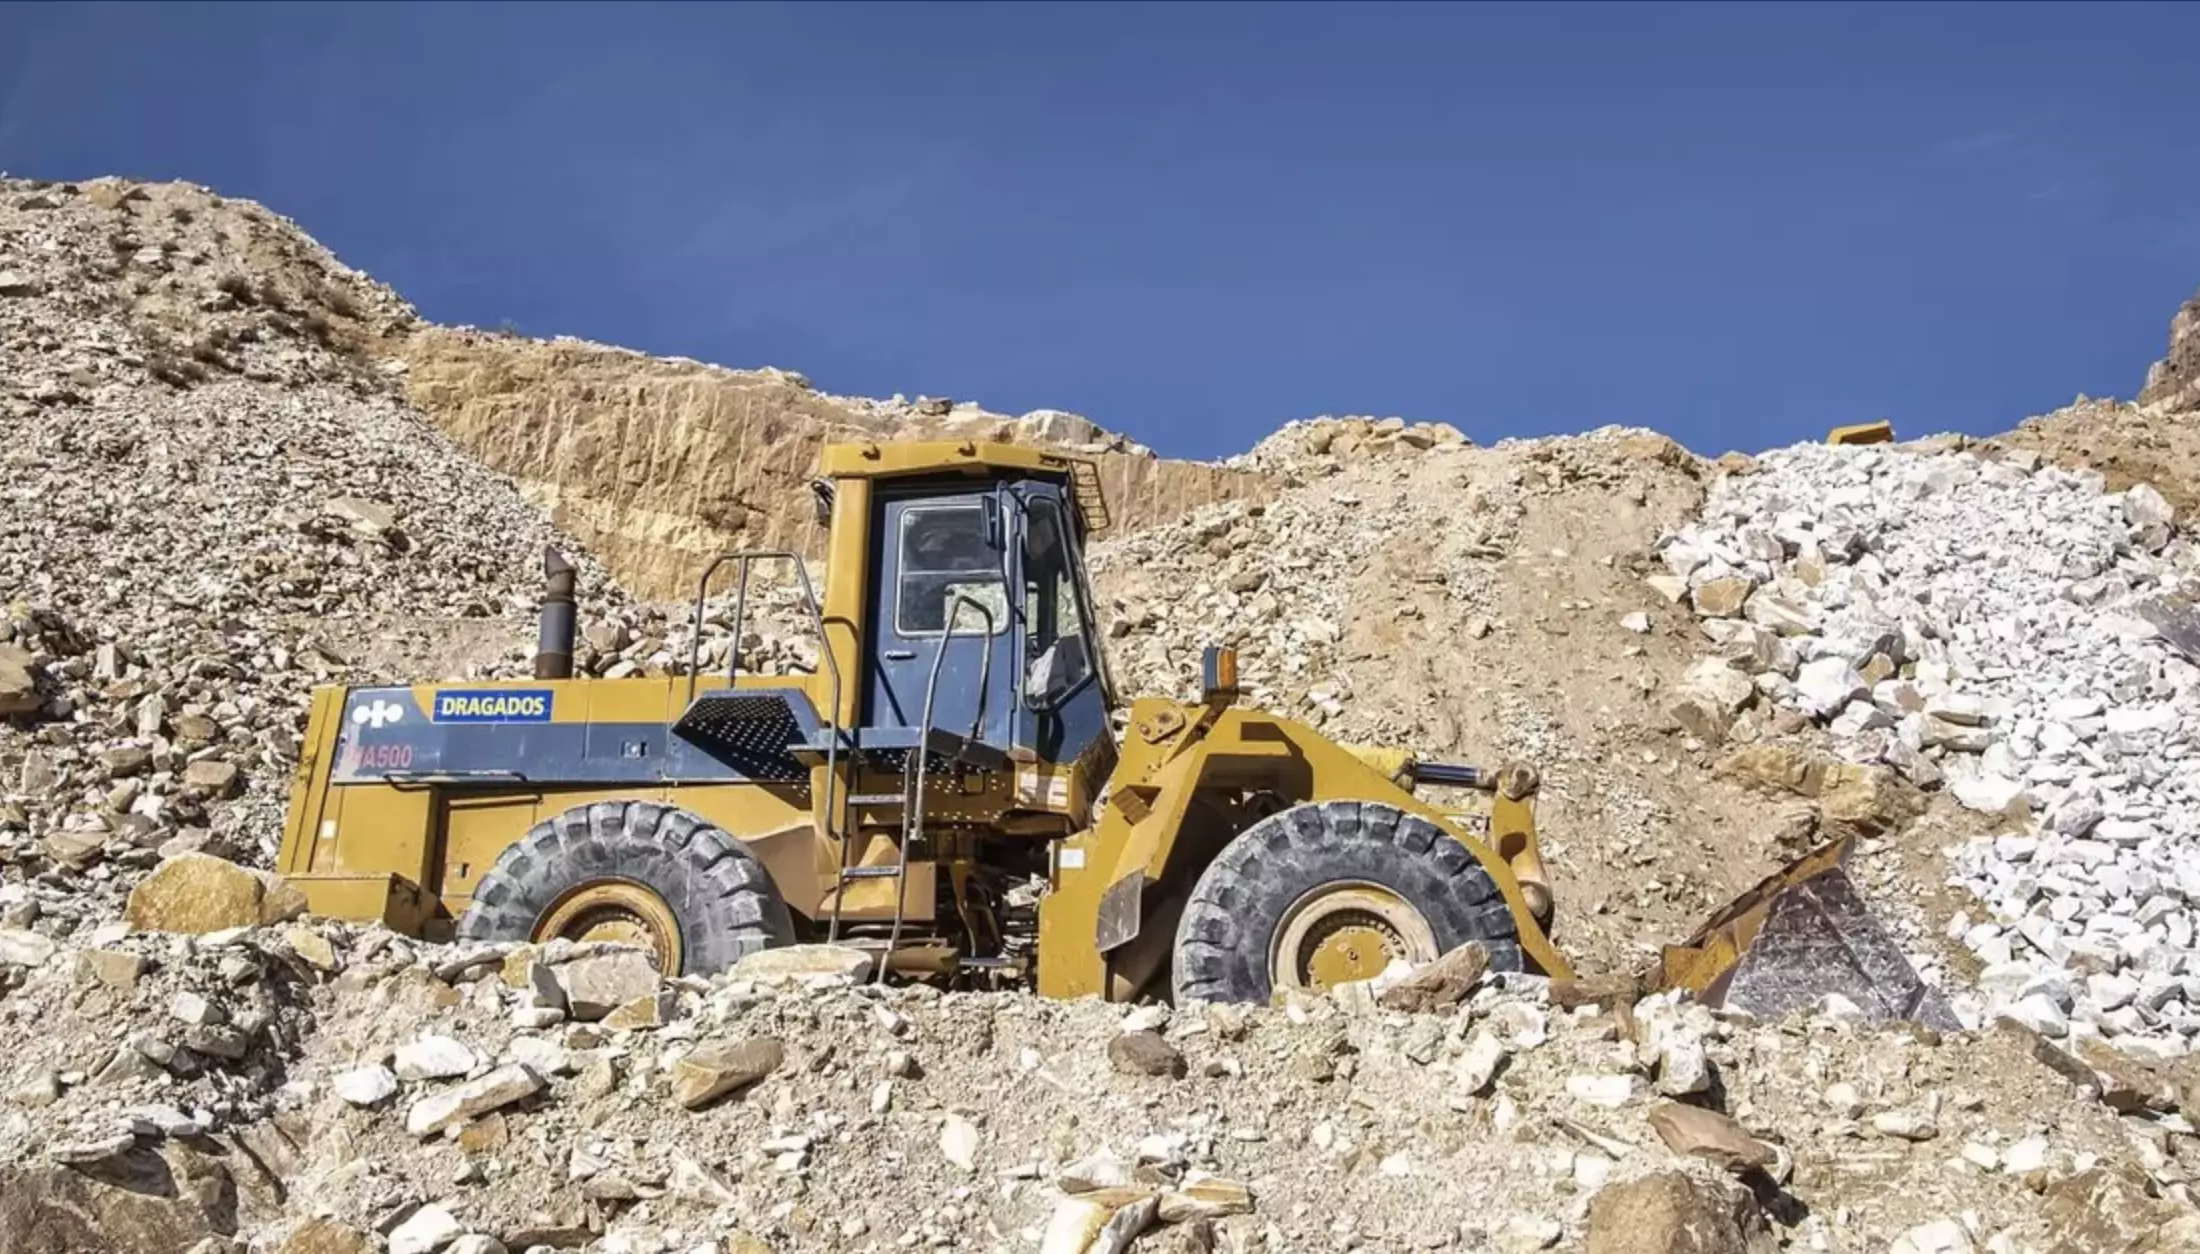 Казахстан обладает запасами редких и редкоземельных металлов на $46 трлн - сенат